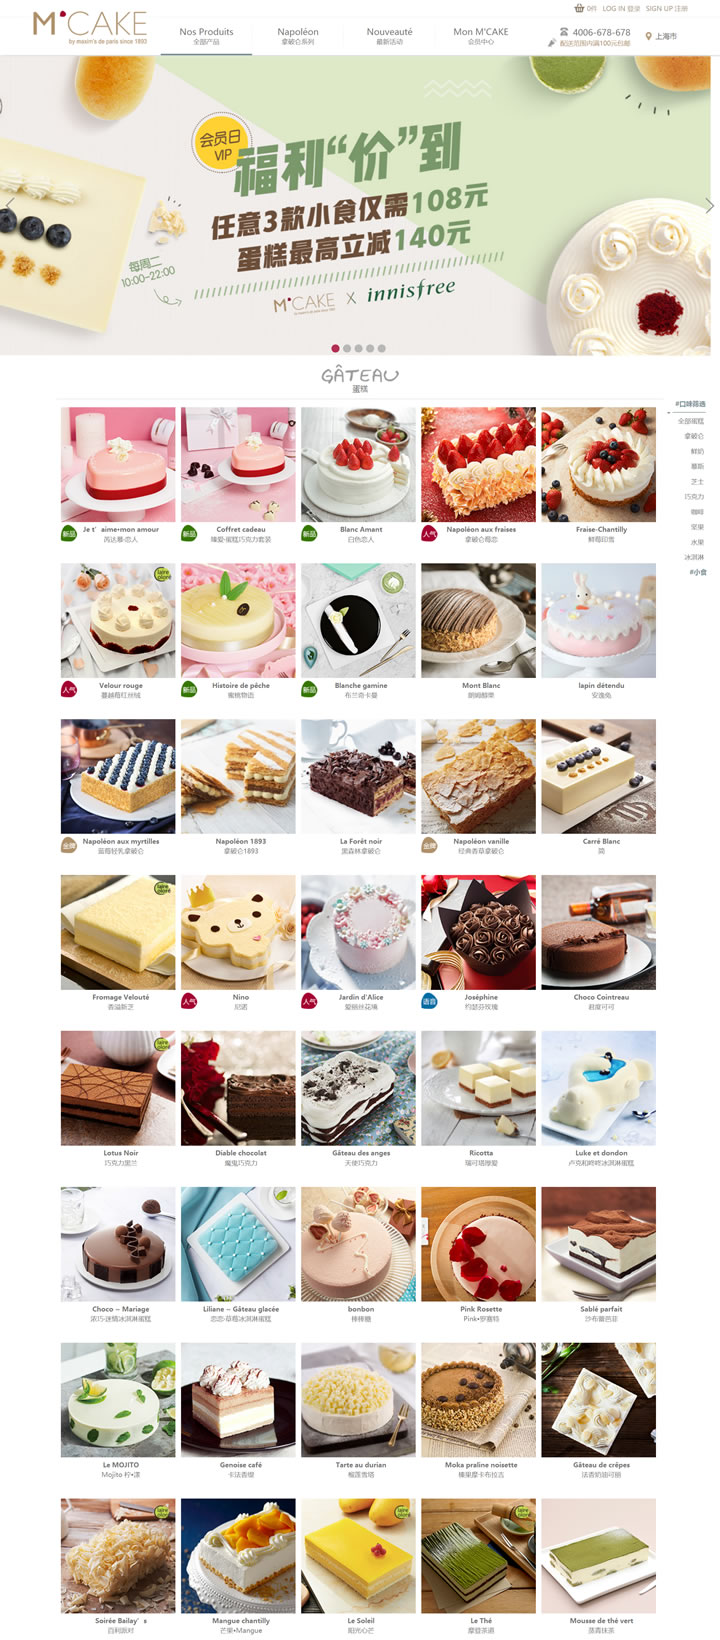 MCAKE蛋糕官方网站：一直都是巴黎的味道